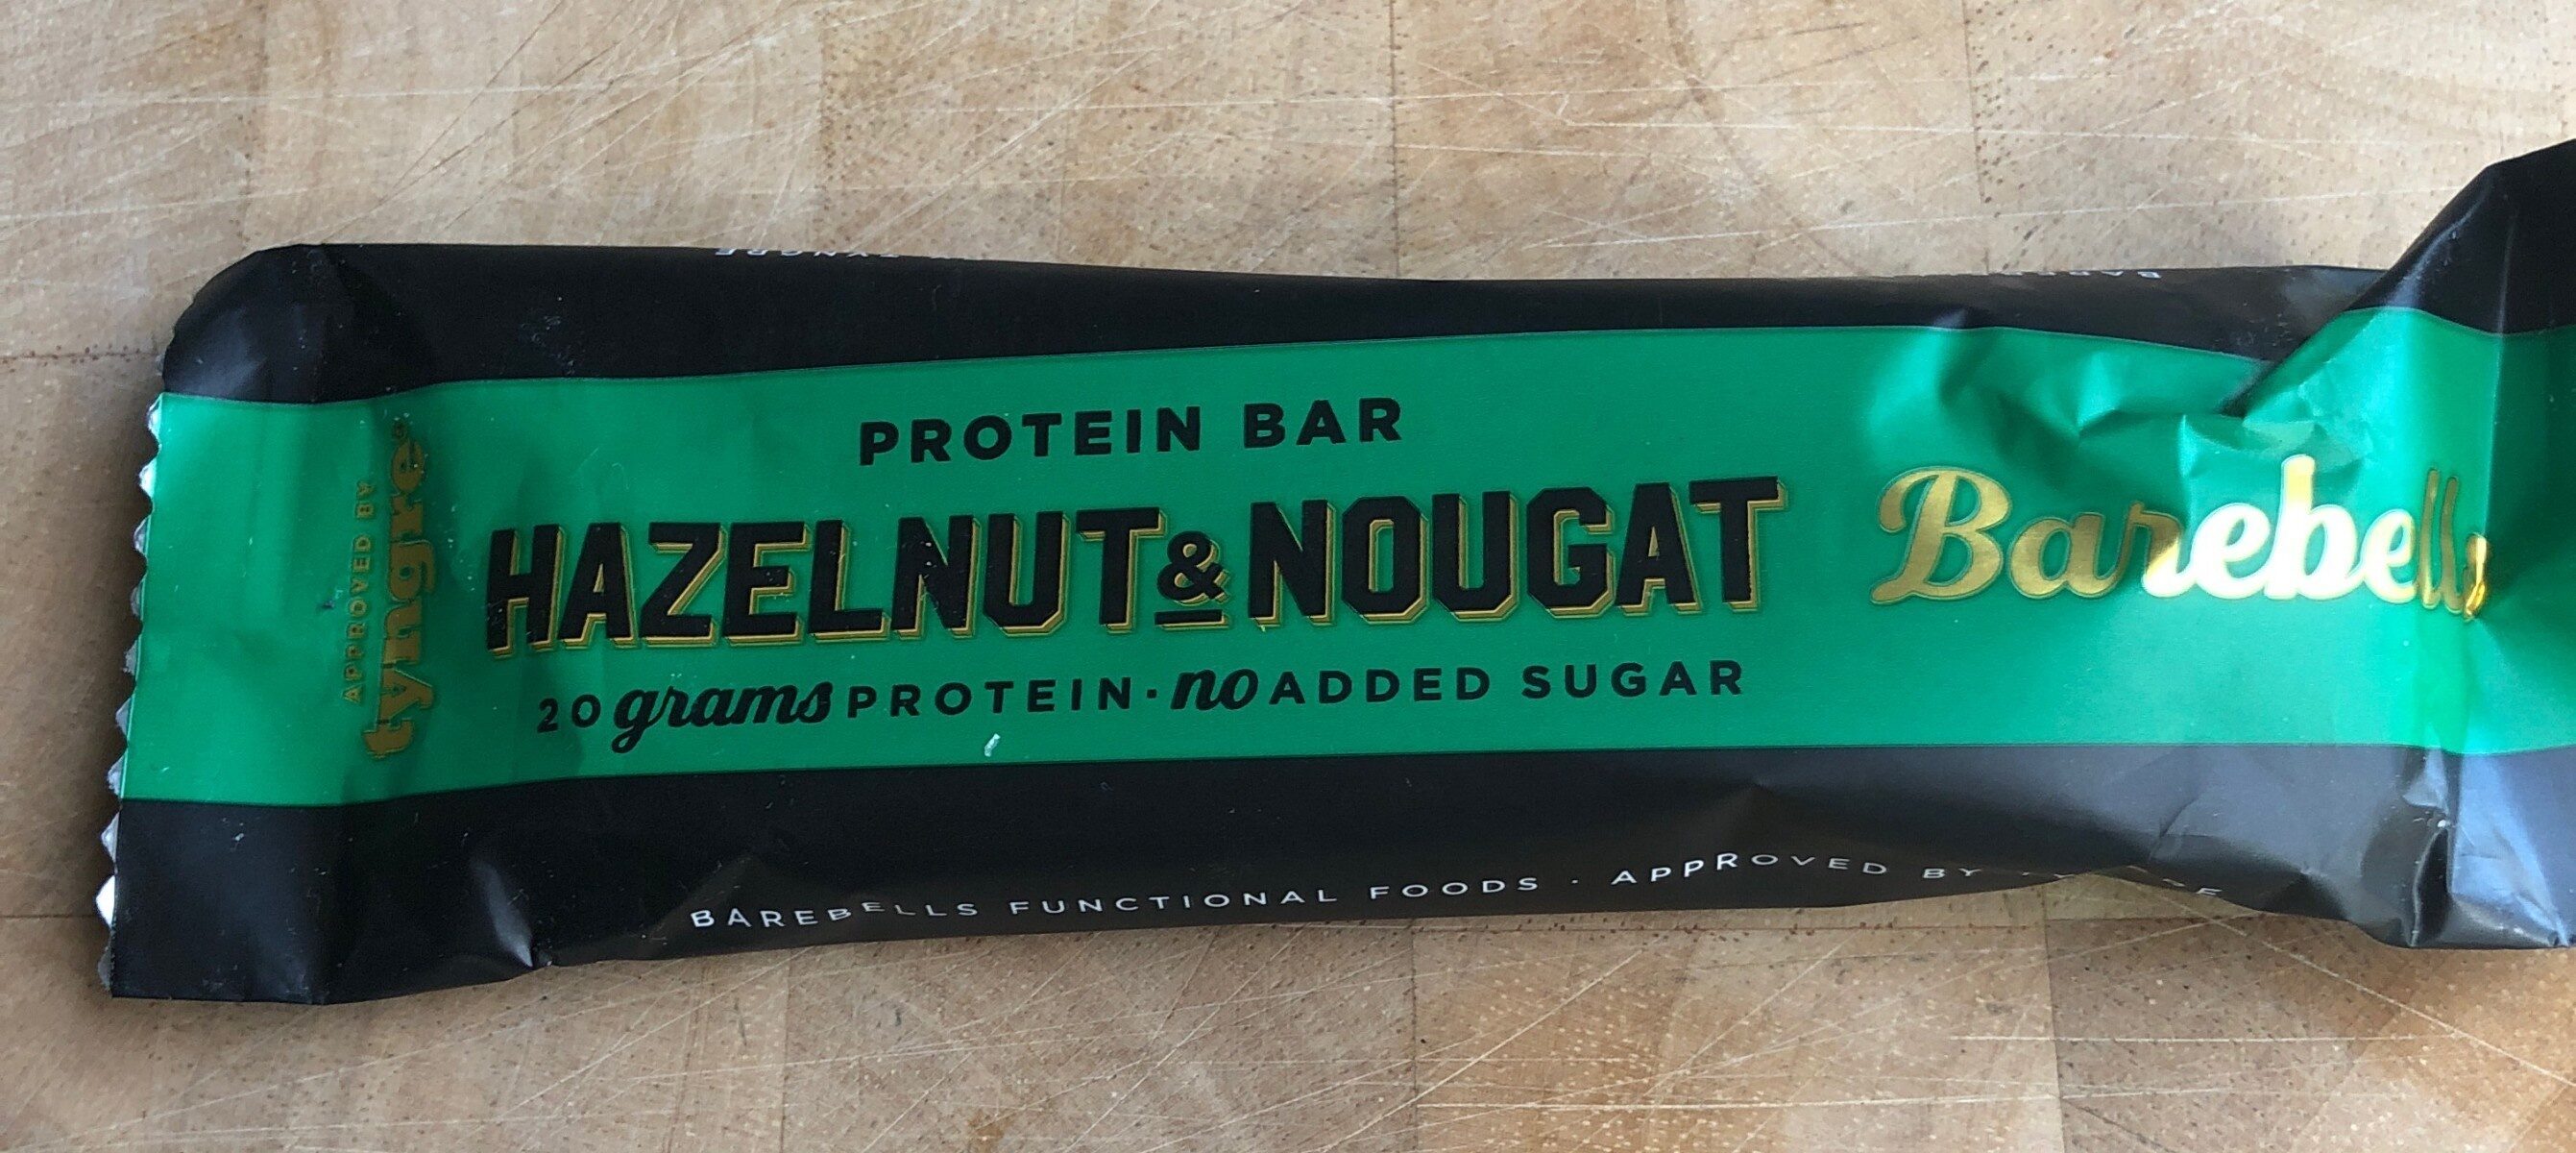 Barre proteine halzelnut nougat - Producto - sv